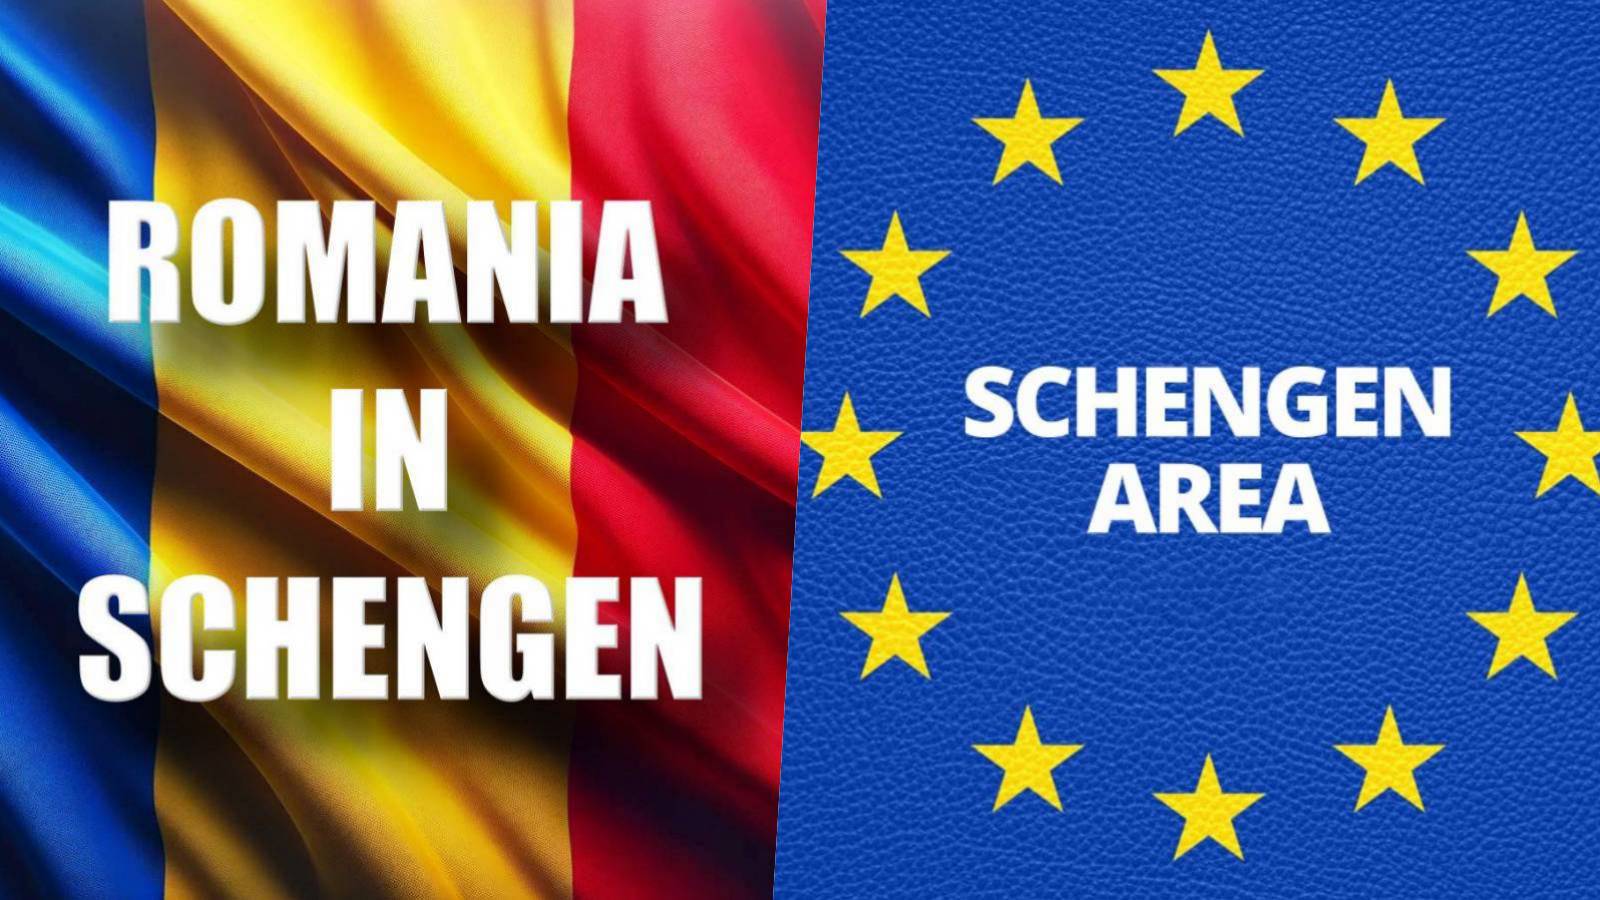 Anuntul Oficial Romania Promisiunea Falsa ULTIM MOMENT Finalizarea Aderarii Schengen